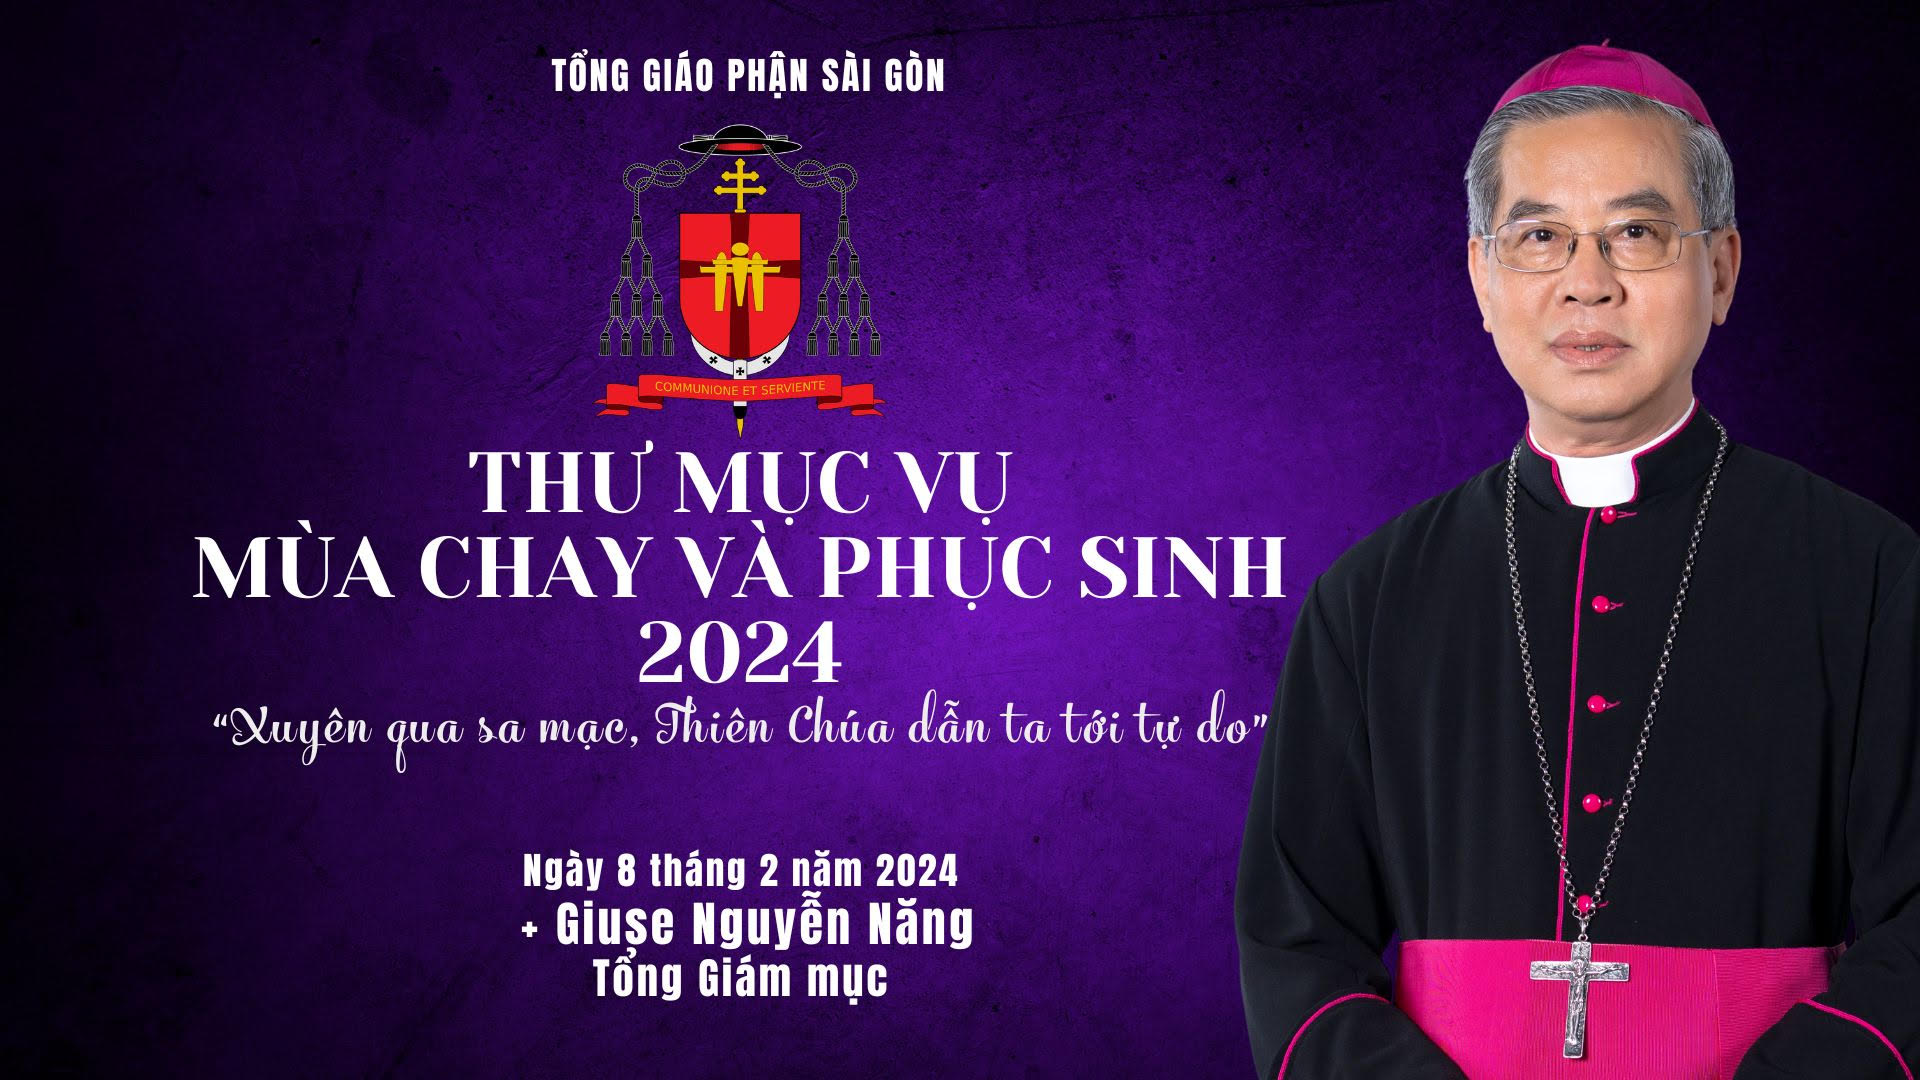 Tòa Tổng Giám mục Sài Gòn: Thư Mục vụ Mùa Chay và Phục Sinh 2024